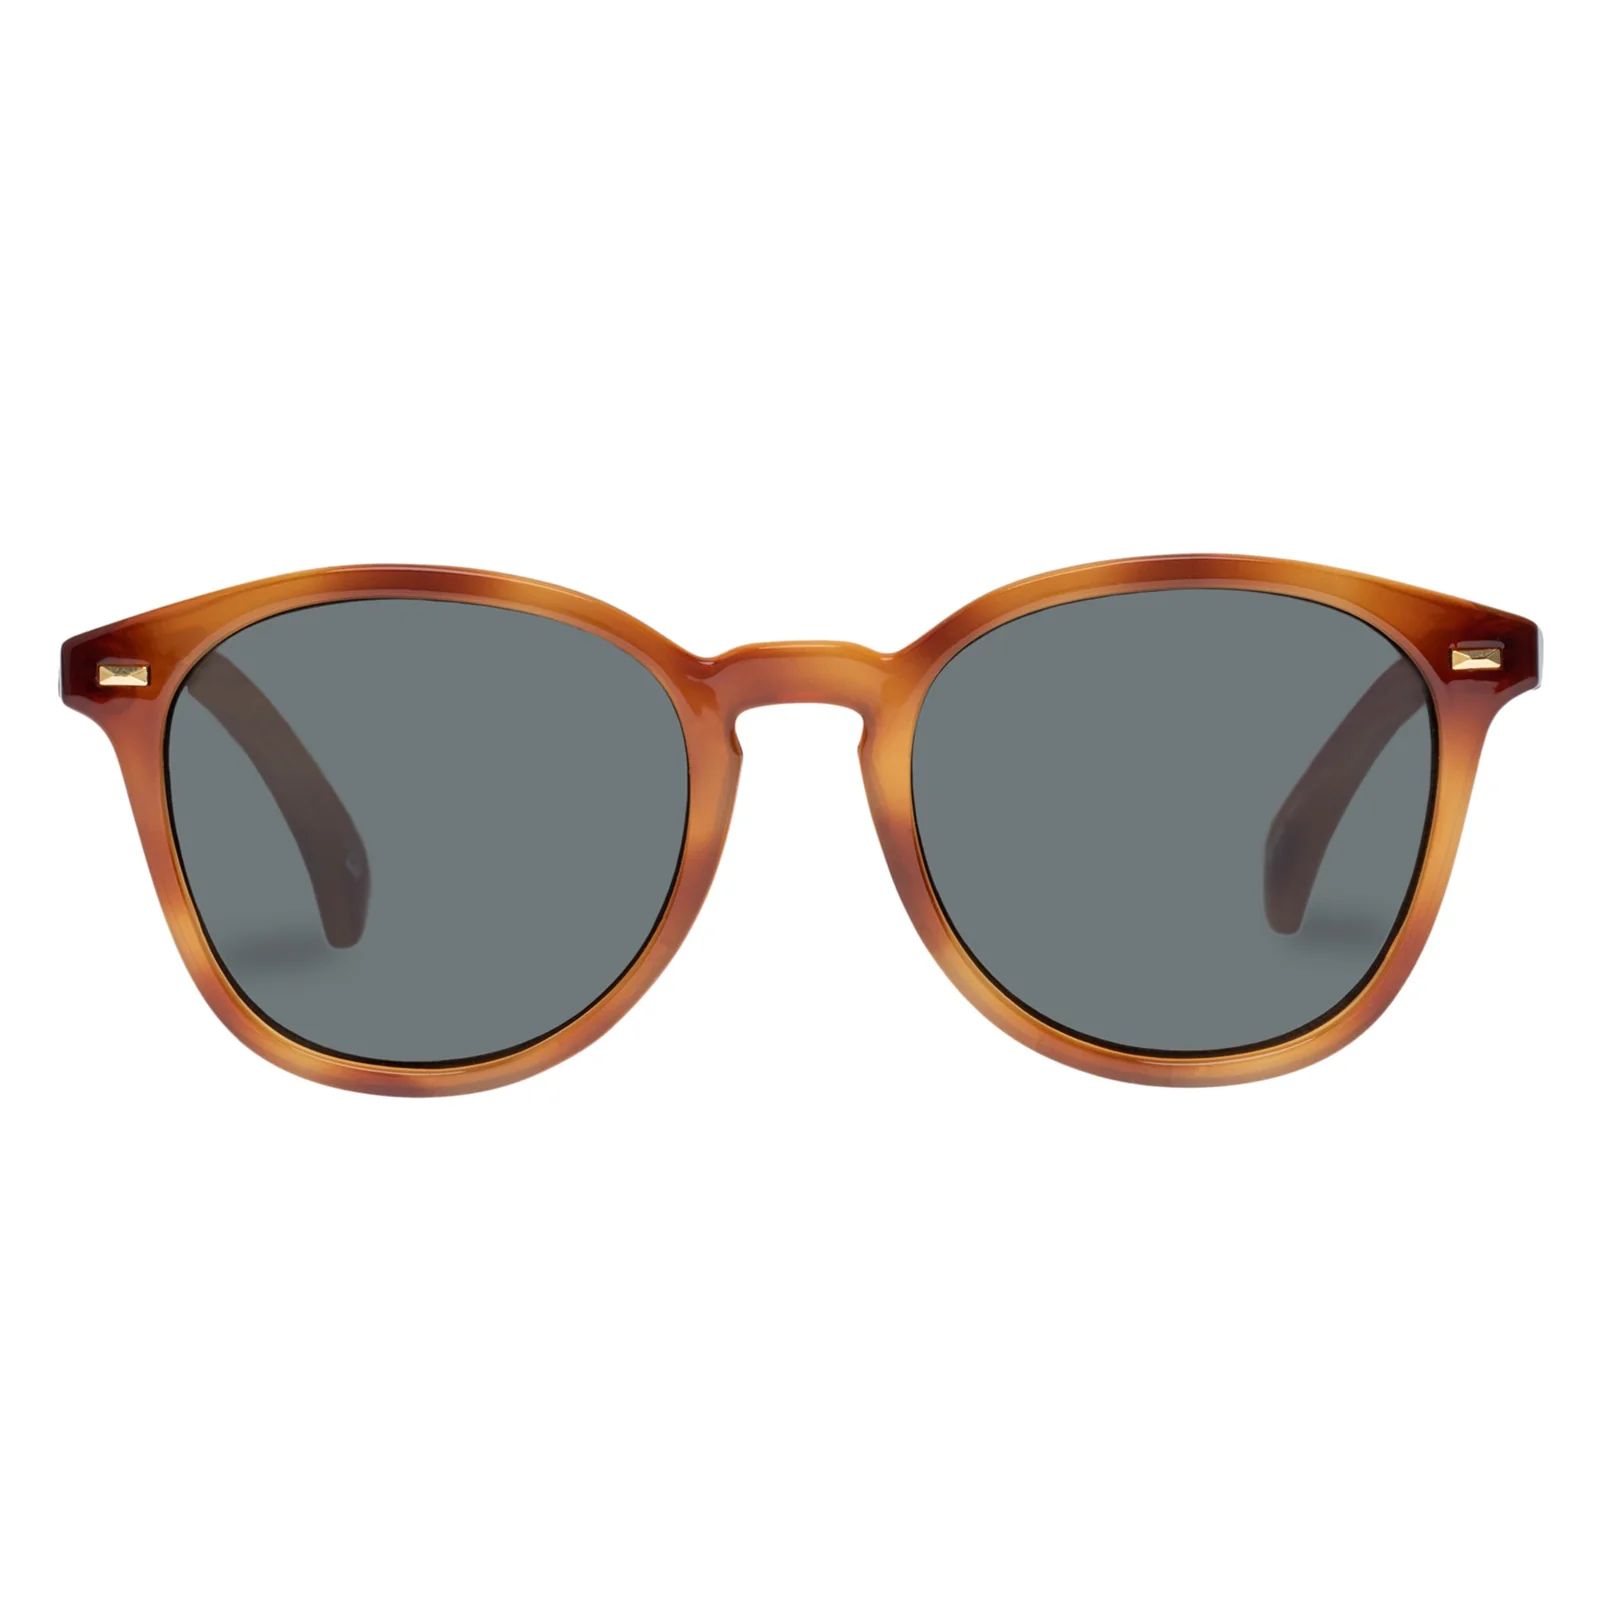 BANDWAGON | VINTAGE TORT | Le Specs (Sunglasses)